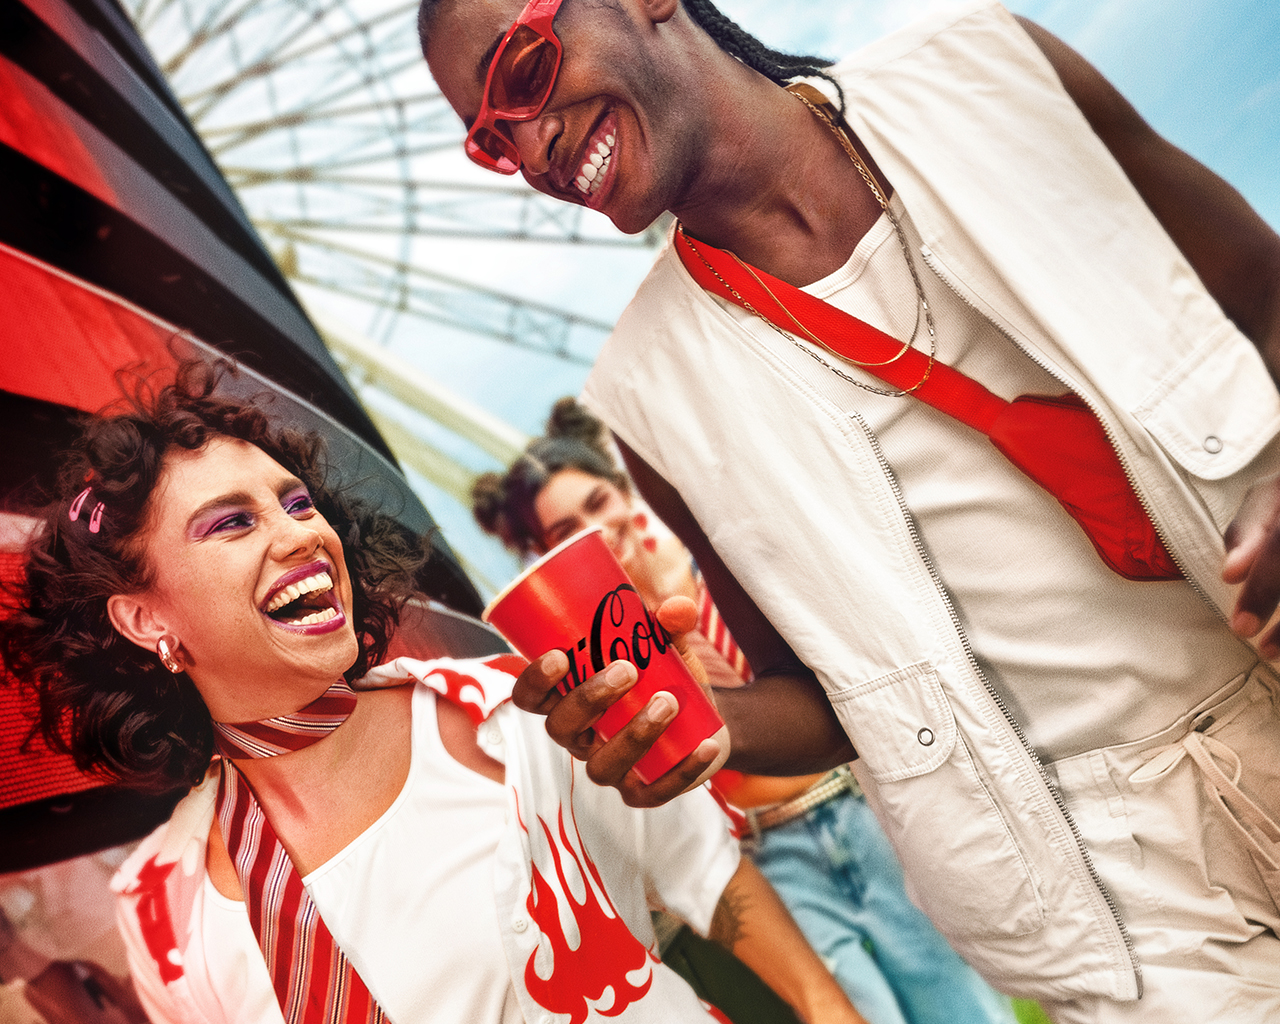  Dos personas disfrutando de una Coca-Cola, sonriendo y riendo. Una persona tiene el pelo rizado con accesorios rosados y lleva una bufanda a rayas, mientras que la otra persona tiene trenzas, usa gafas de sol, un chaleco blanco y una bolsa cruzada roja. Líneas gráficas rojas mejoran el ambiente festivo.